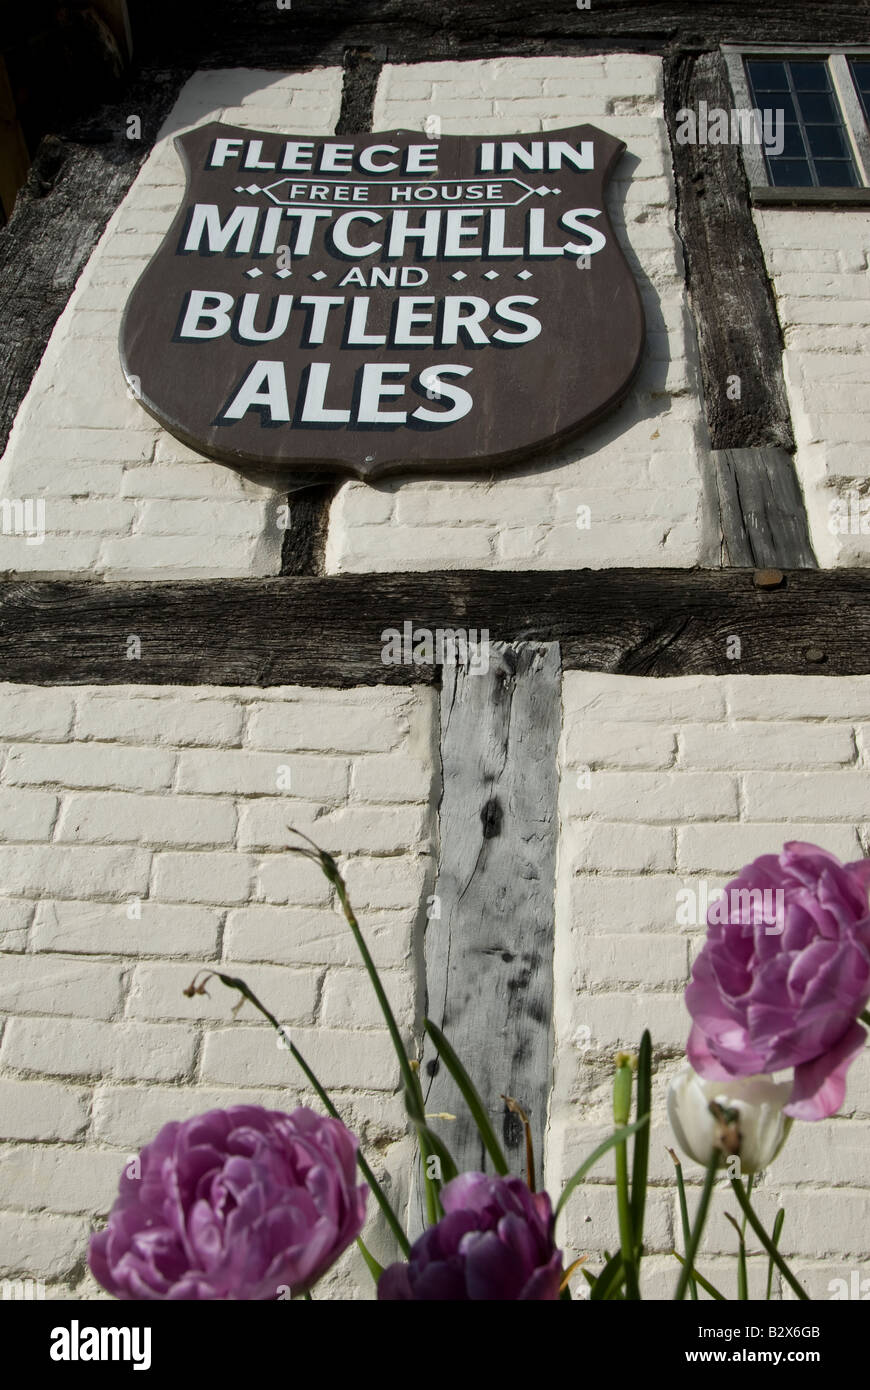 Mitchells e maggiordomi ales cartello in Fleece Inn public house a Bretforton, Worcestershire, Regno Unito. Foto Stock